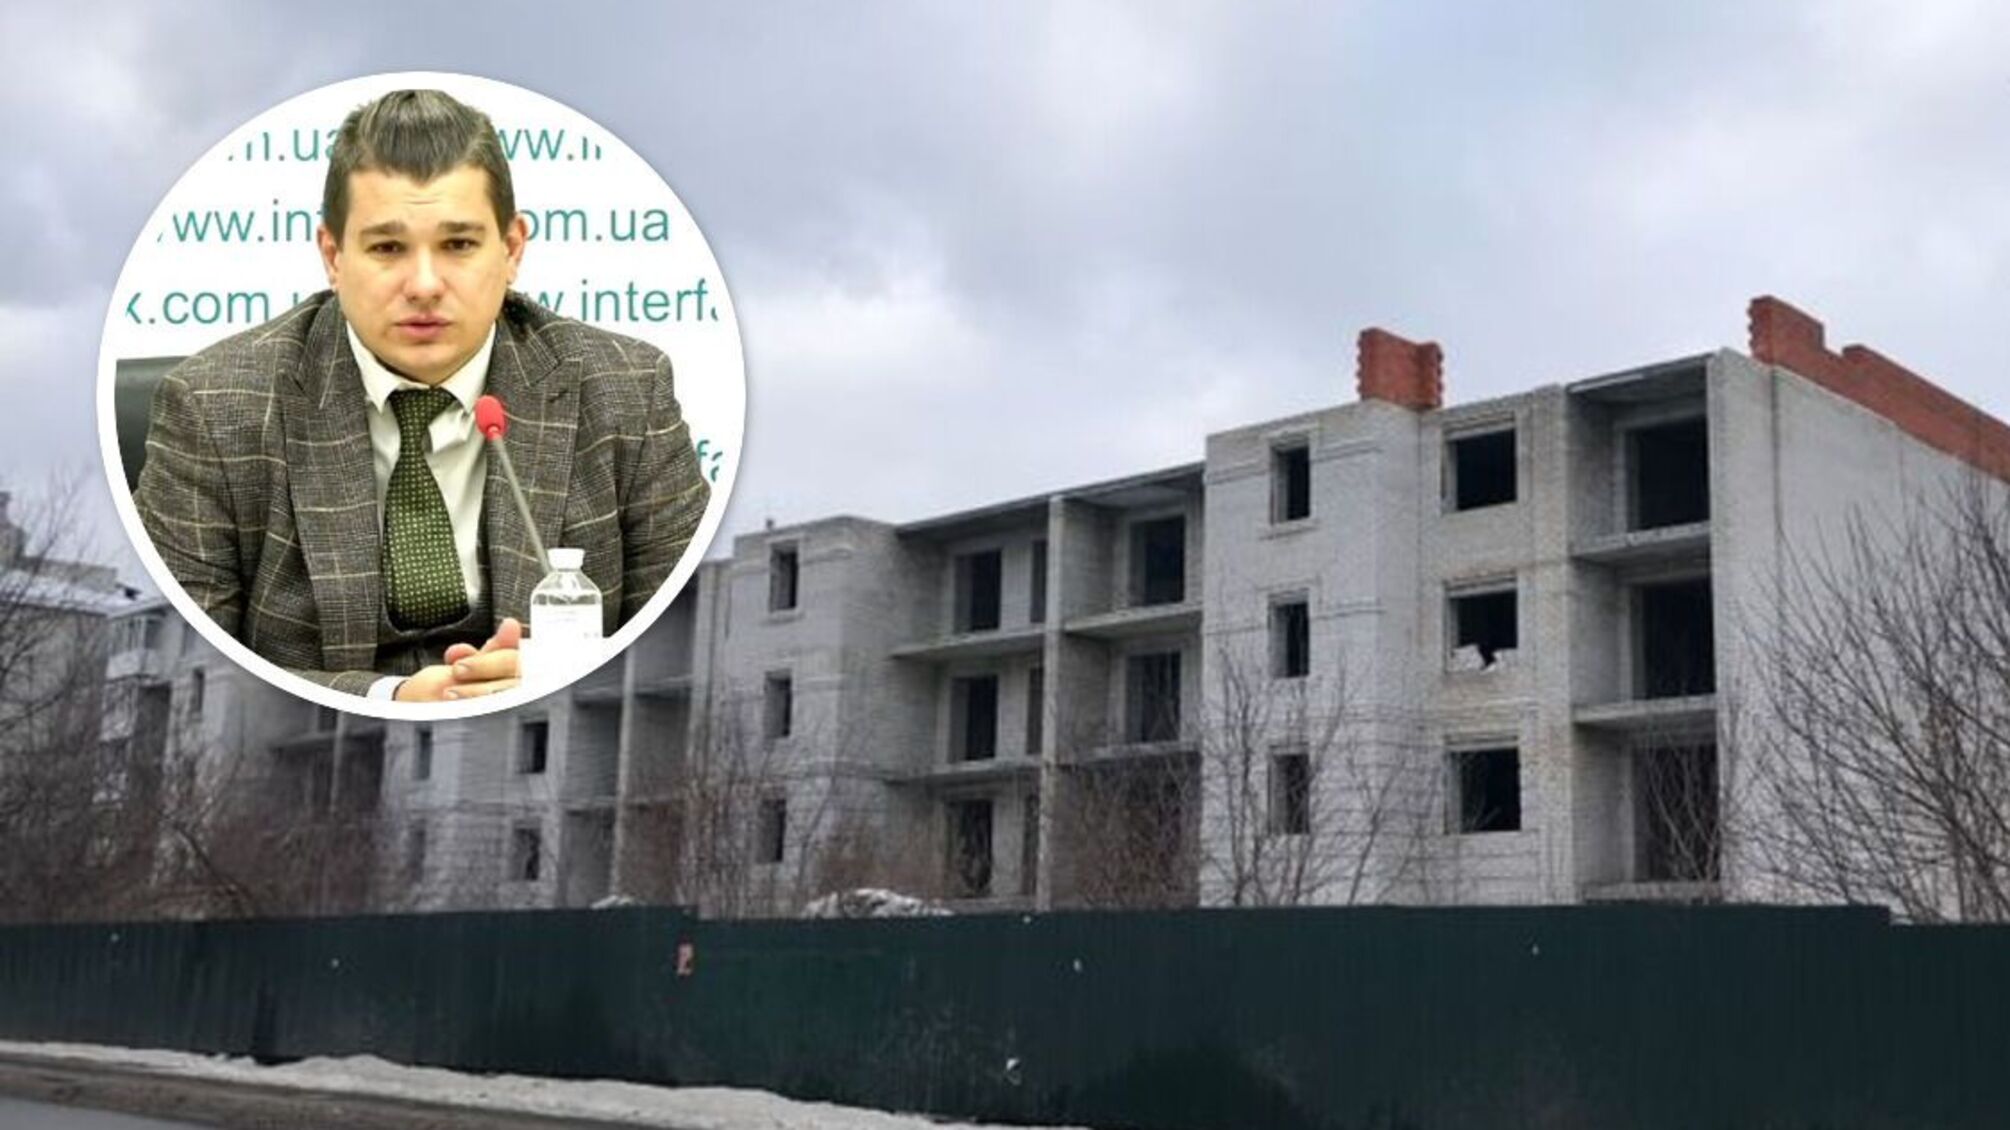 Конфлікт навколо будівництва в Гостомелі: юрист пояснив ситуацію